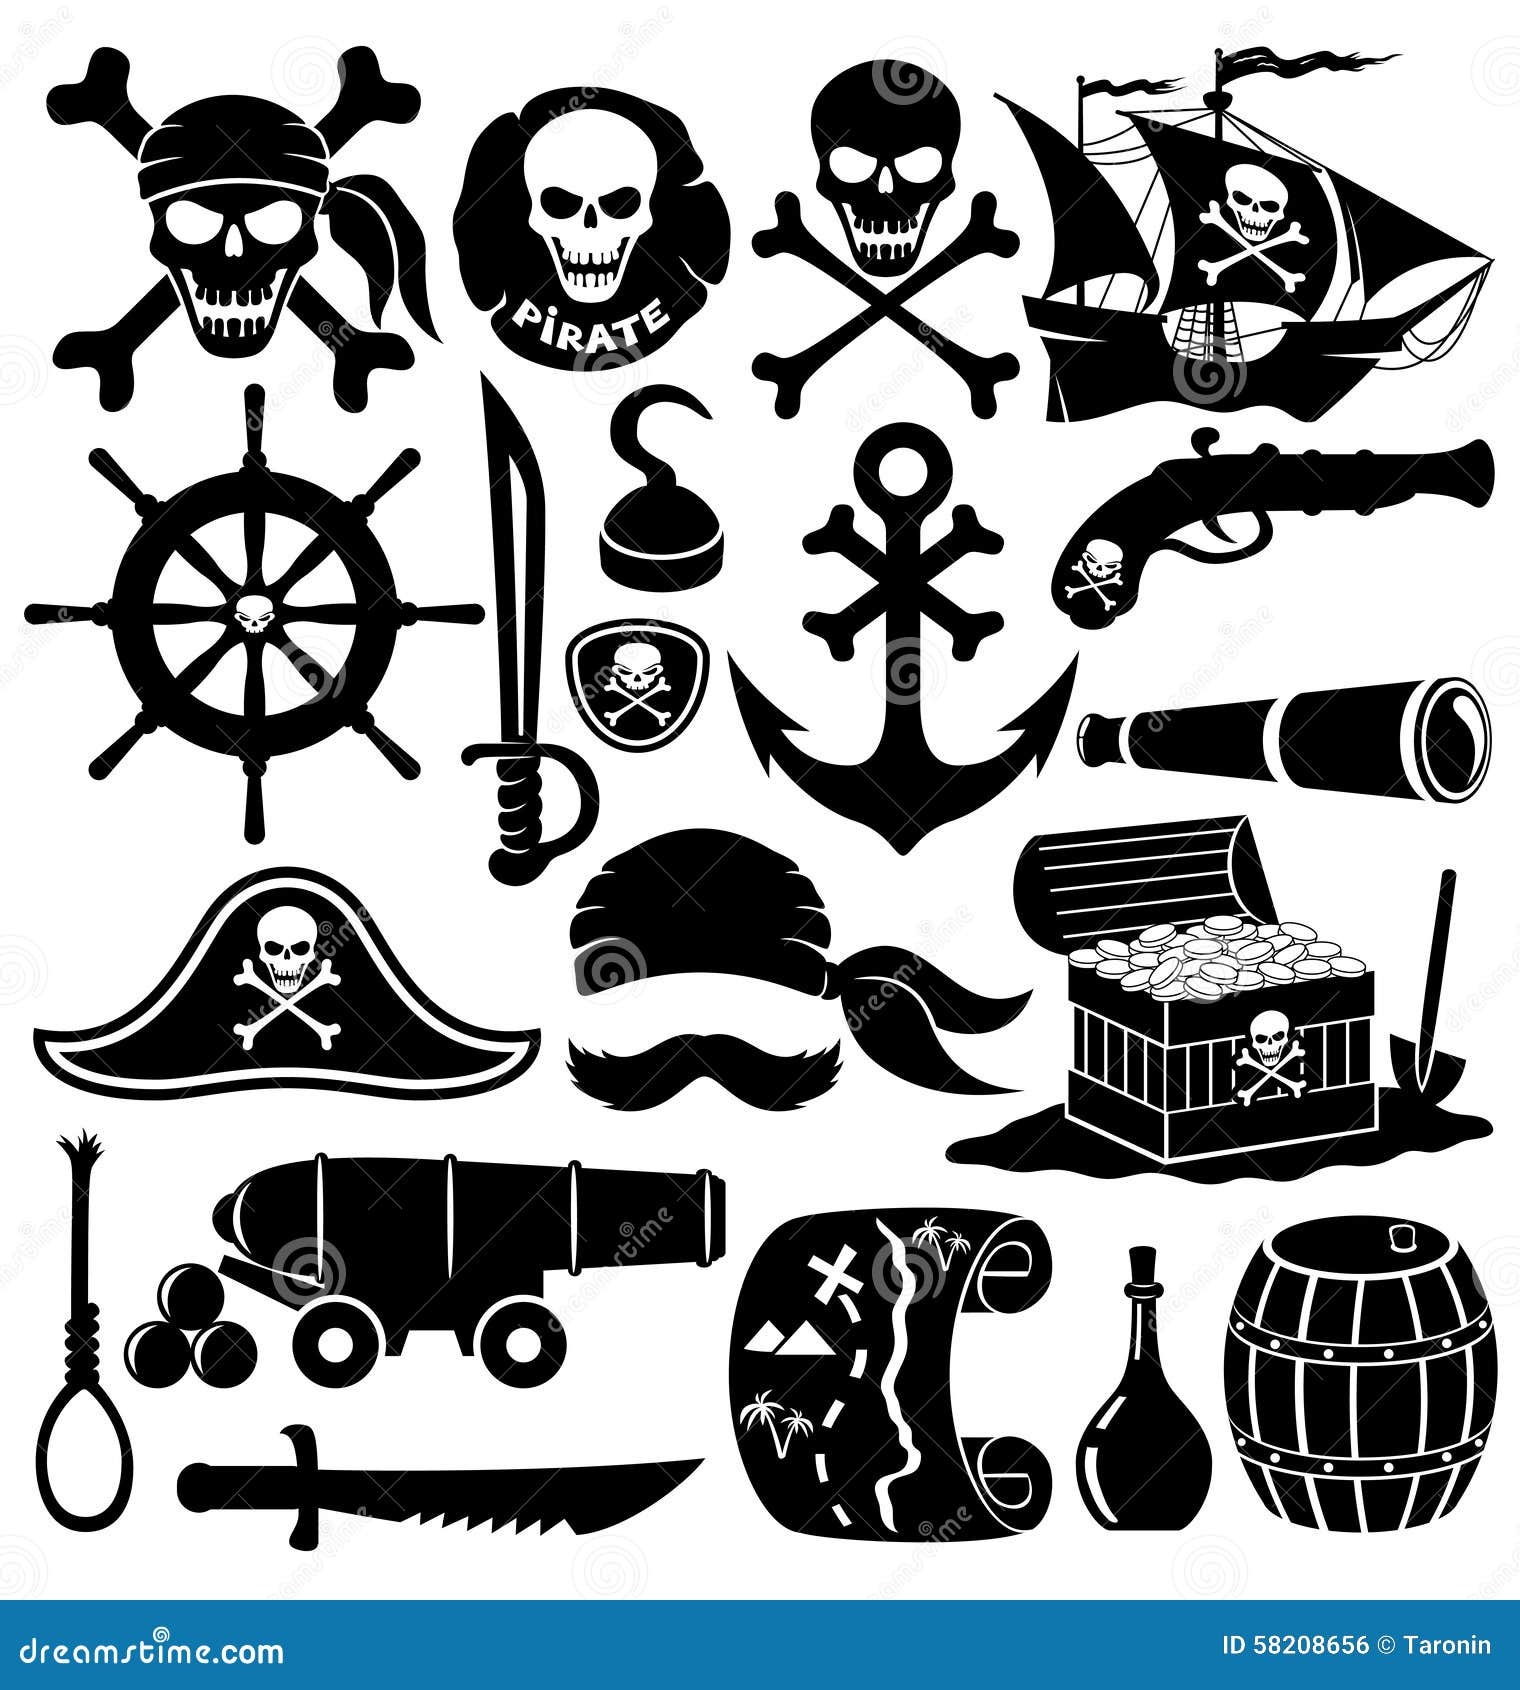 Accesorios de piratas dibujados a mano